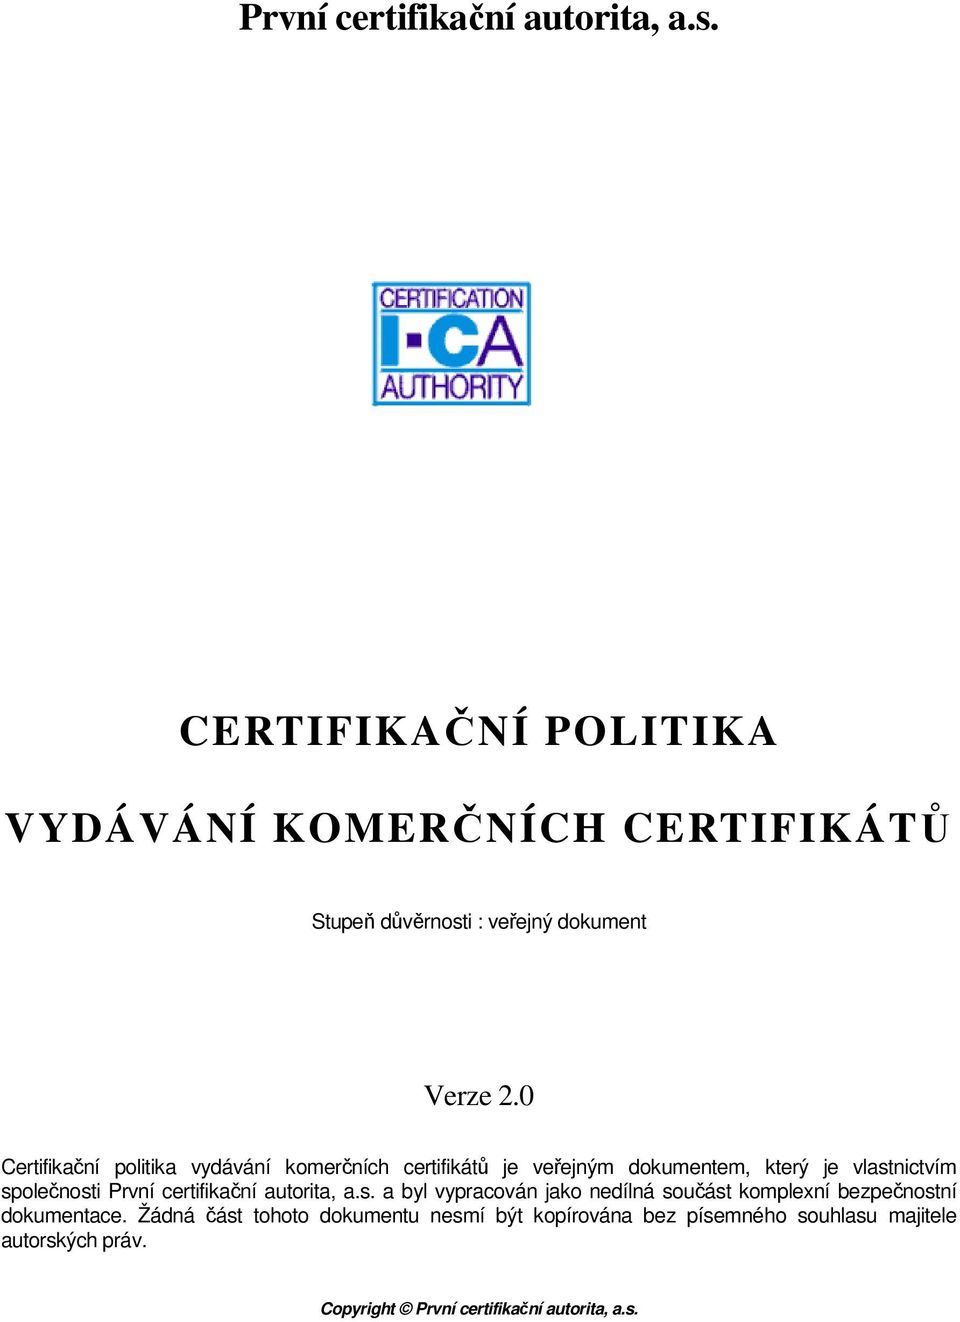 0 Certifikační politika vydávání komerčních certifikátů je veřejným dokumentem, který je vlastnictvím